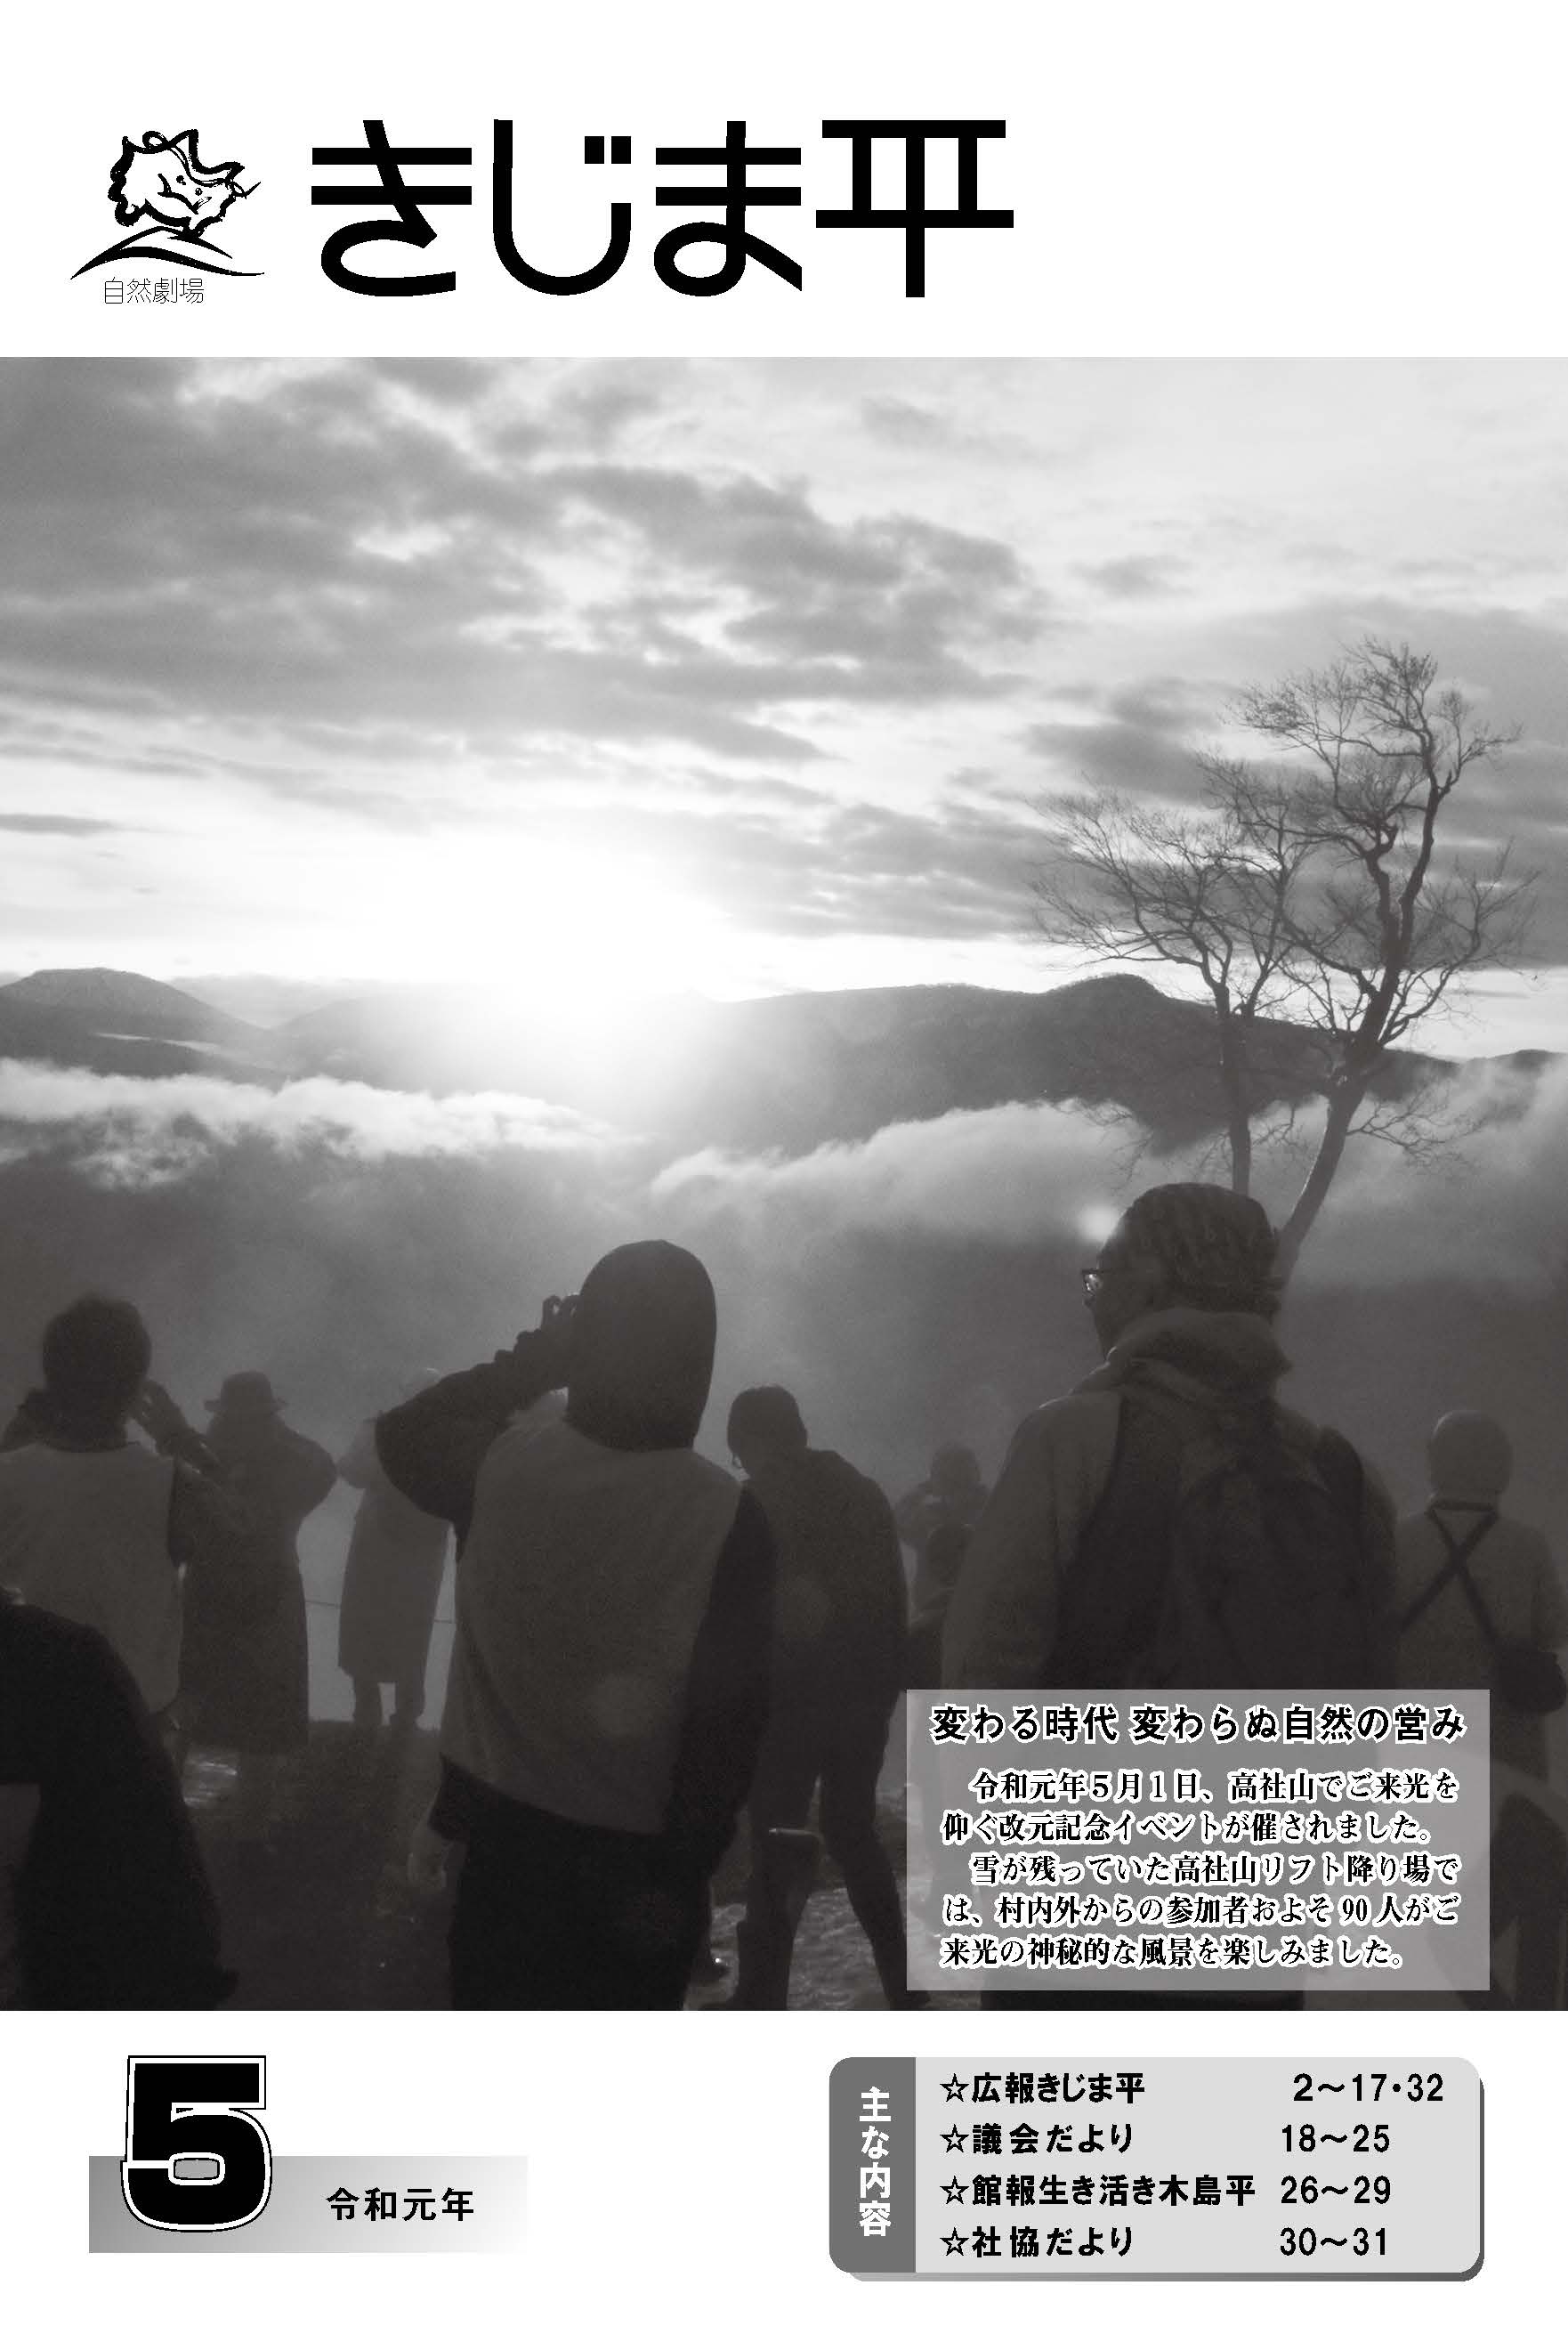 令和元年5月1日に行われた高社山でご来光を仰ぐ改元記念イベントの様子